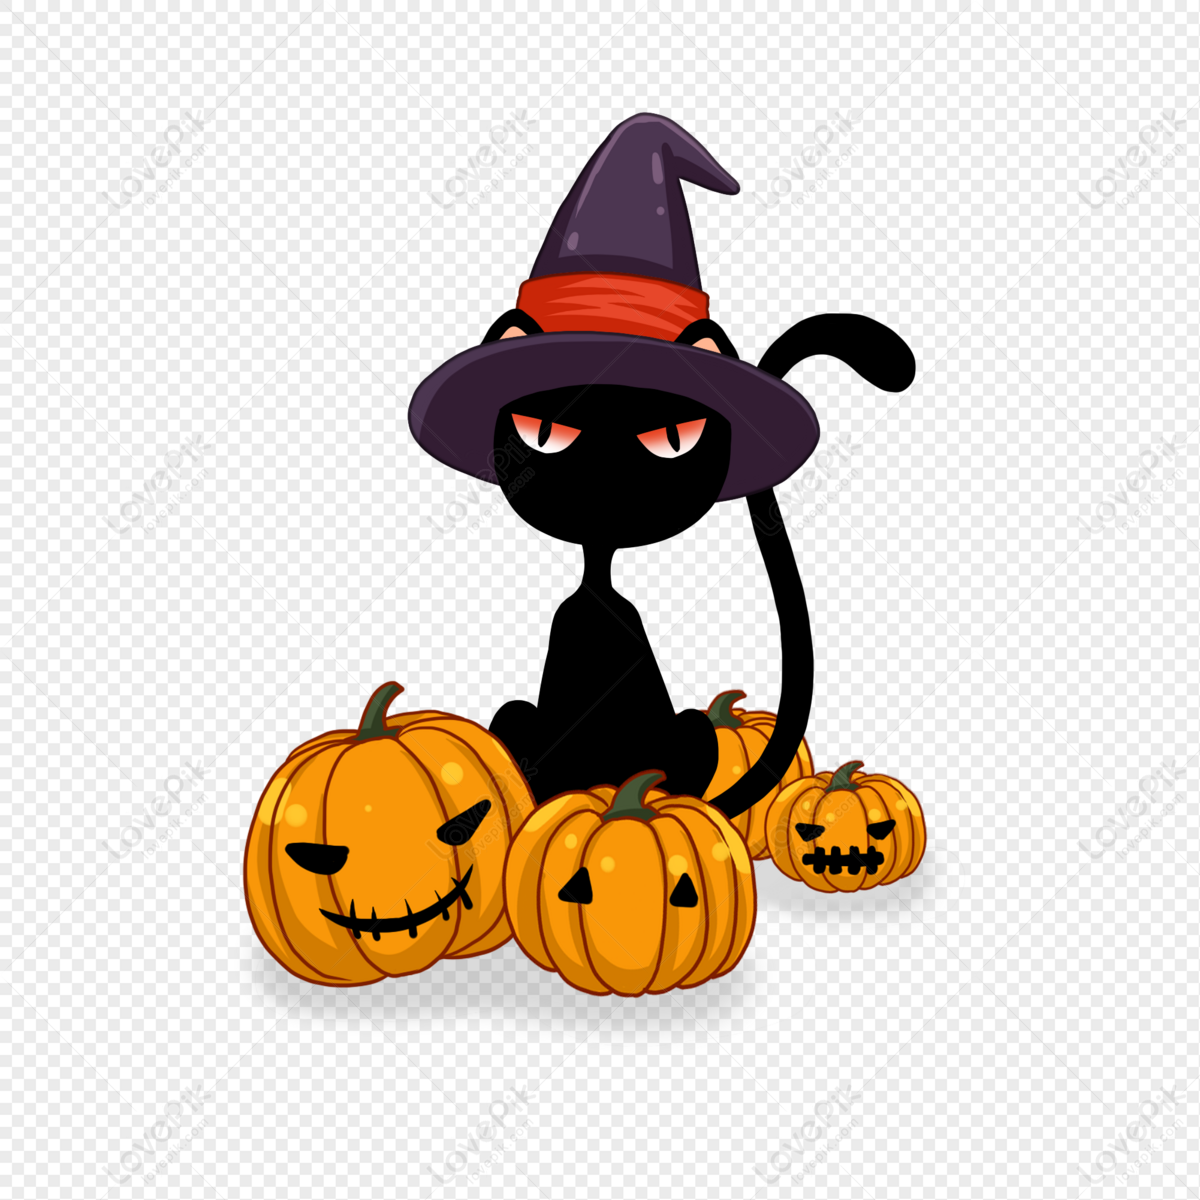 Gato Preto De Halloween PNG Imagens Gratuitas Para Download - Lovepik